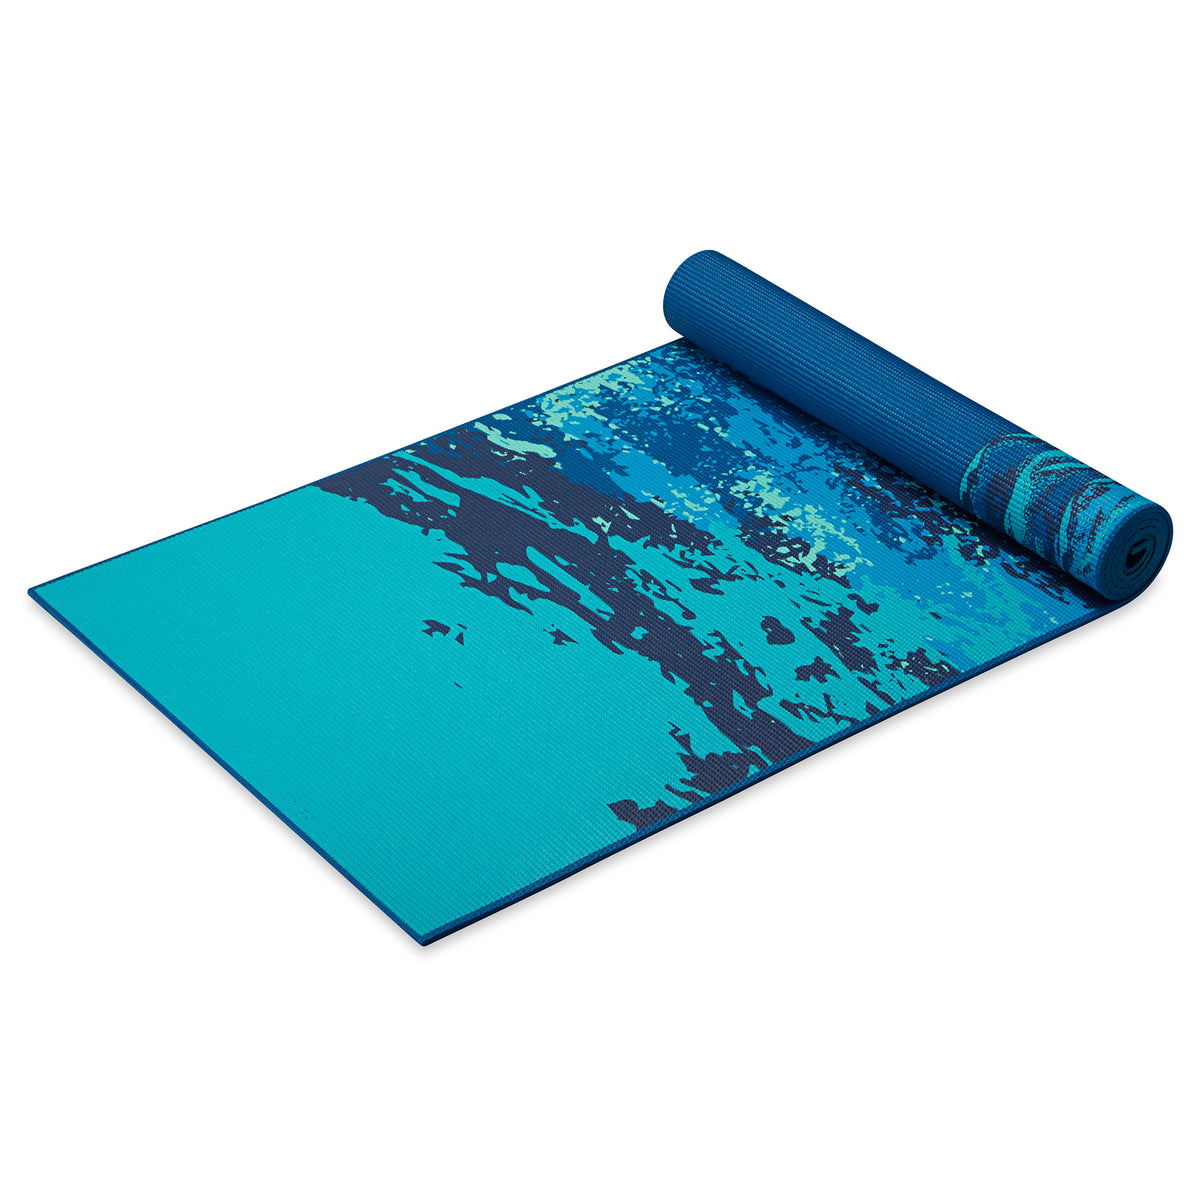 GAIAM 6 mm Premium Yoga Mat - Yoga mat, Buy online